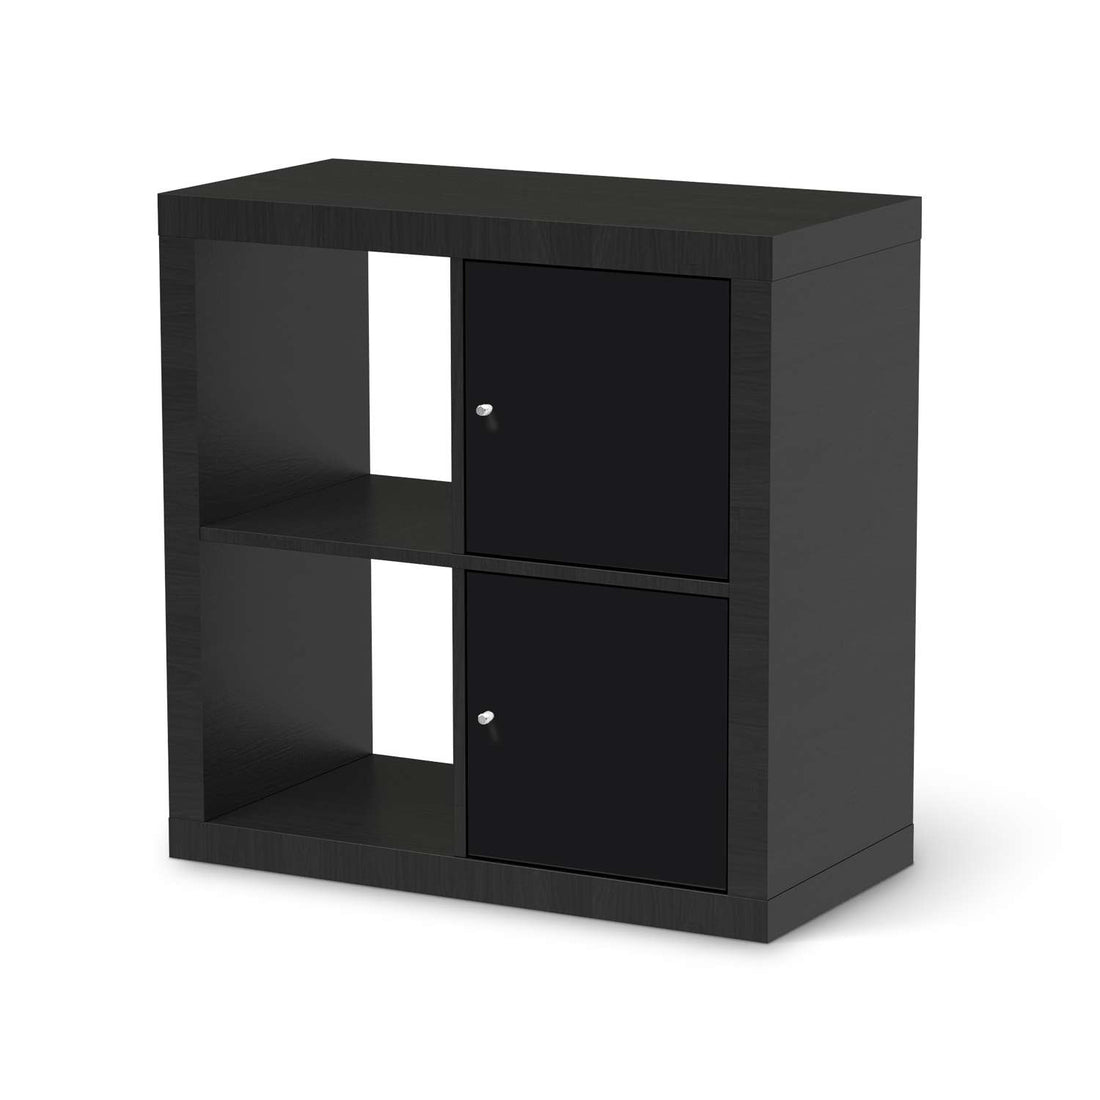 Klebefolie für Möbel Schwarz - IKEA Expedit Regal 2 Türen Hoch - schwarz